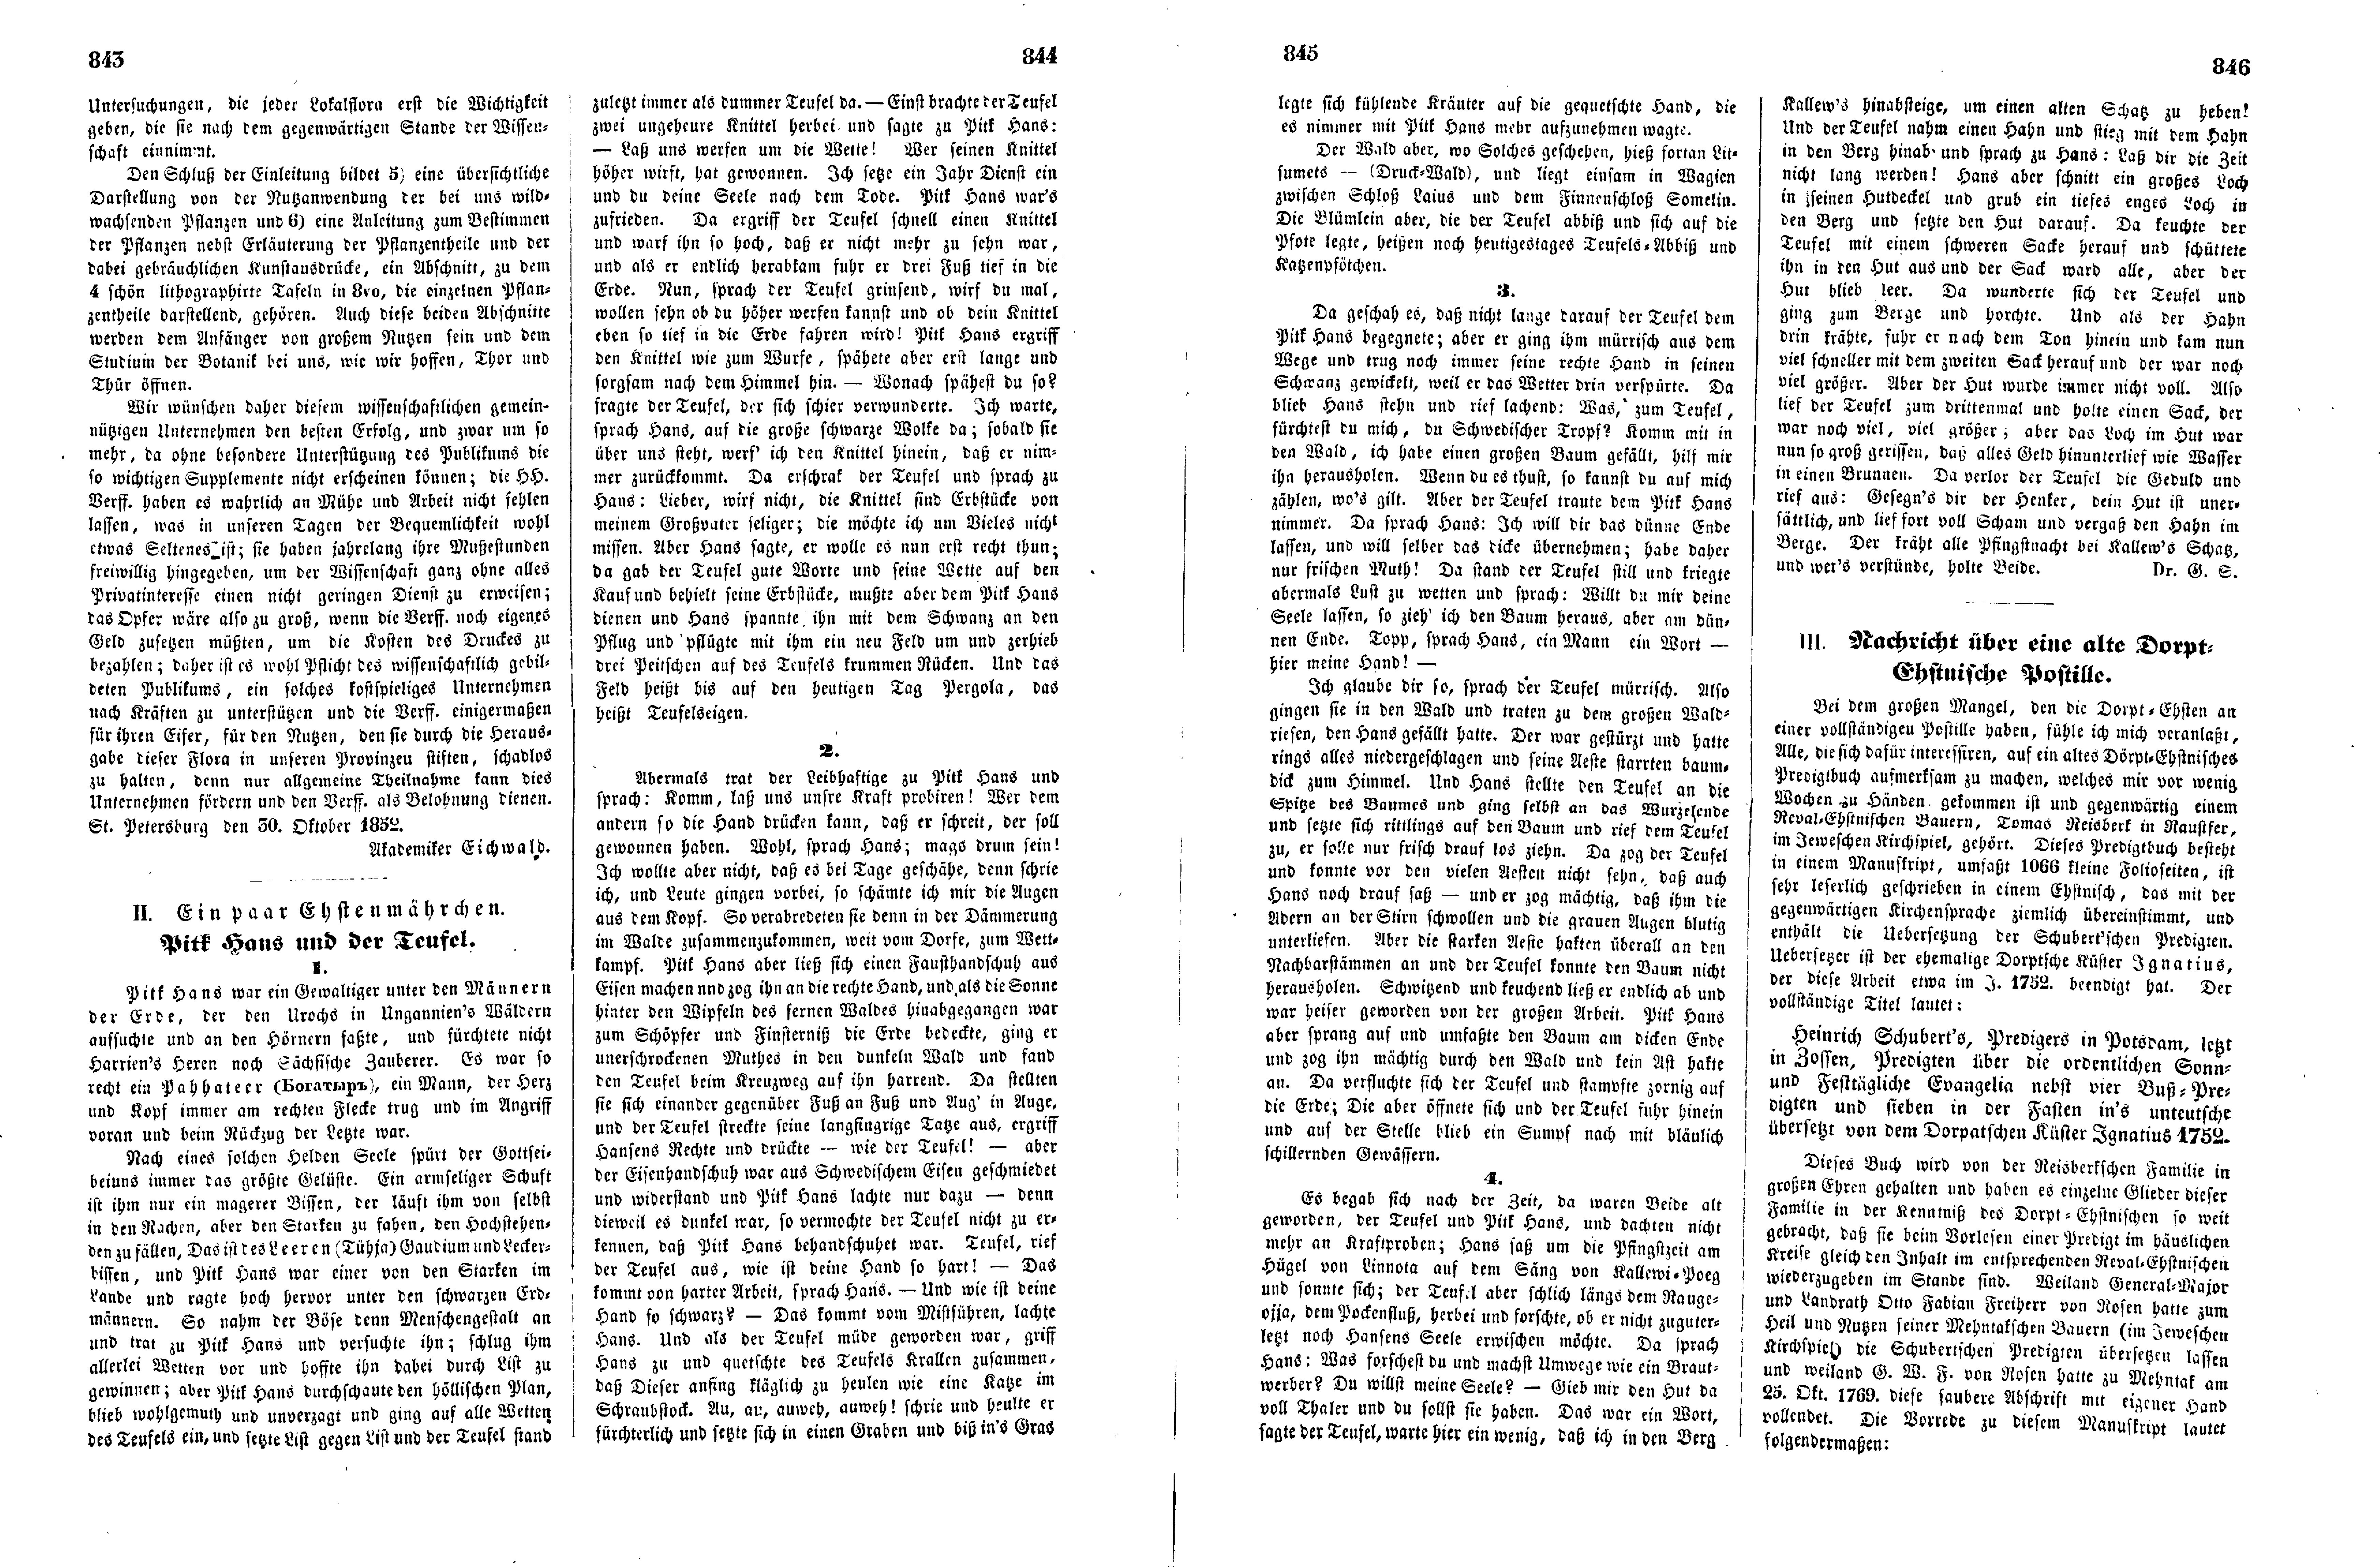 Pitk Hans und der Teufel (Ein paar Ehstenmährchen) (1852) | 1. (843-846) Main body of text